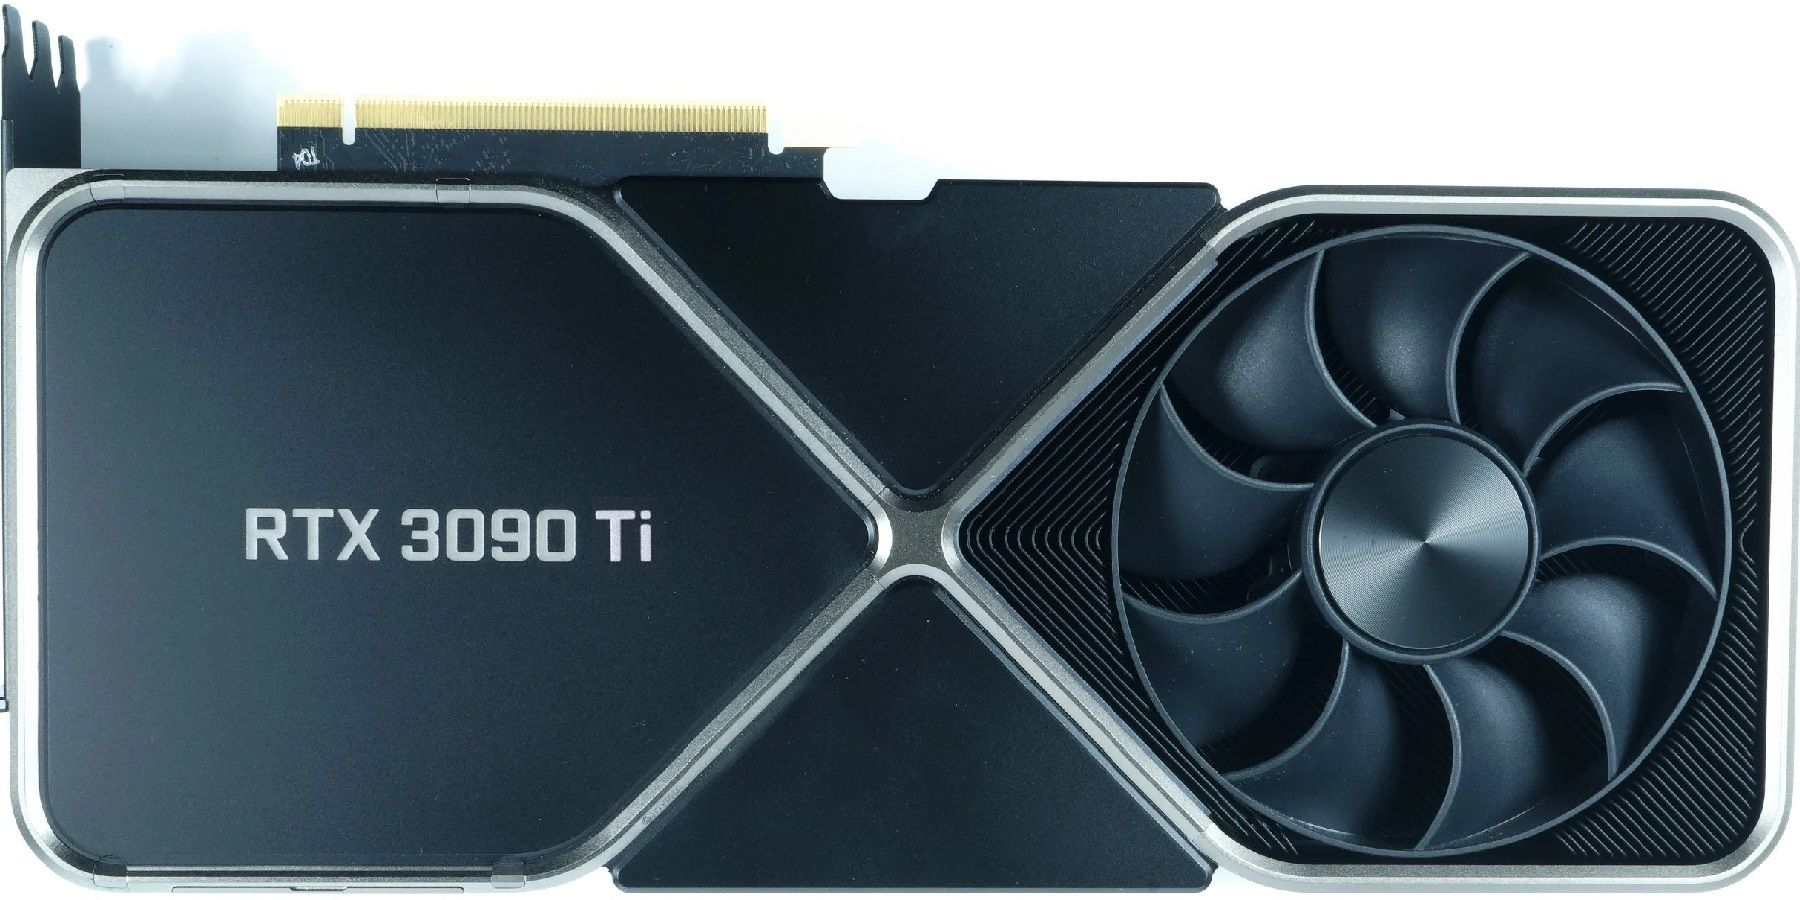 Утечка предполагает, что Nvidia RTX 3090 Ti может стоить до 4000 долларов